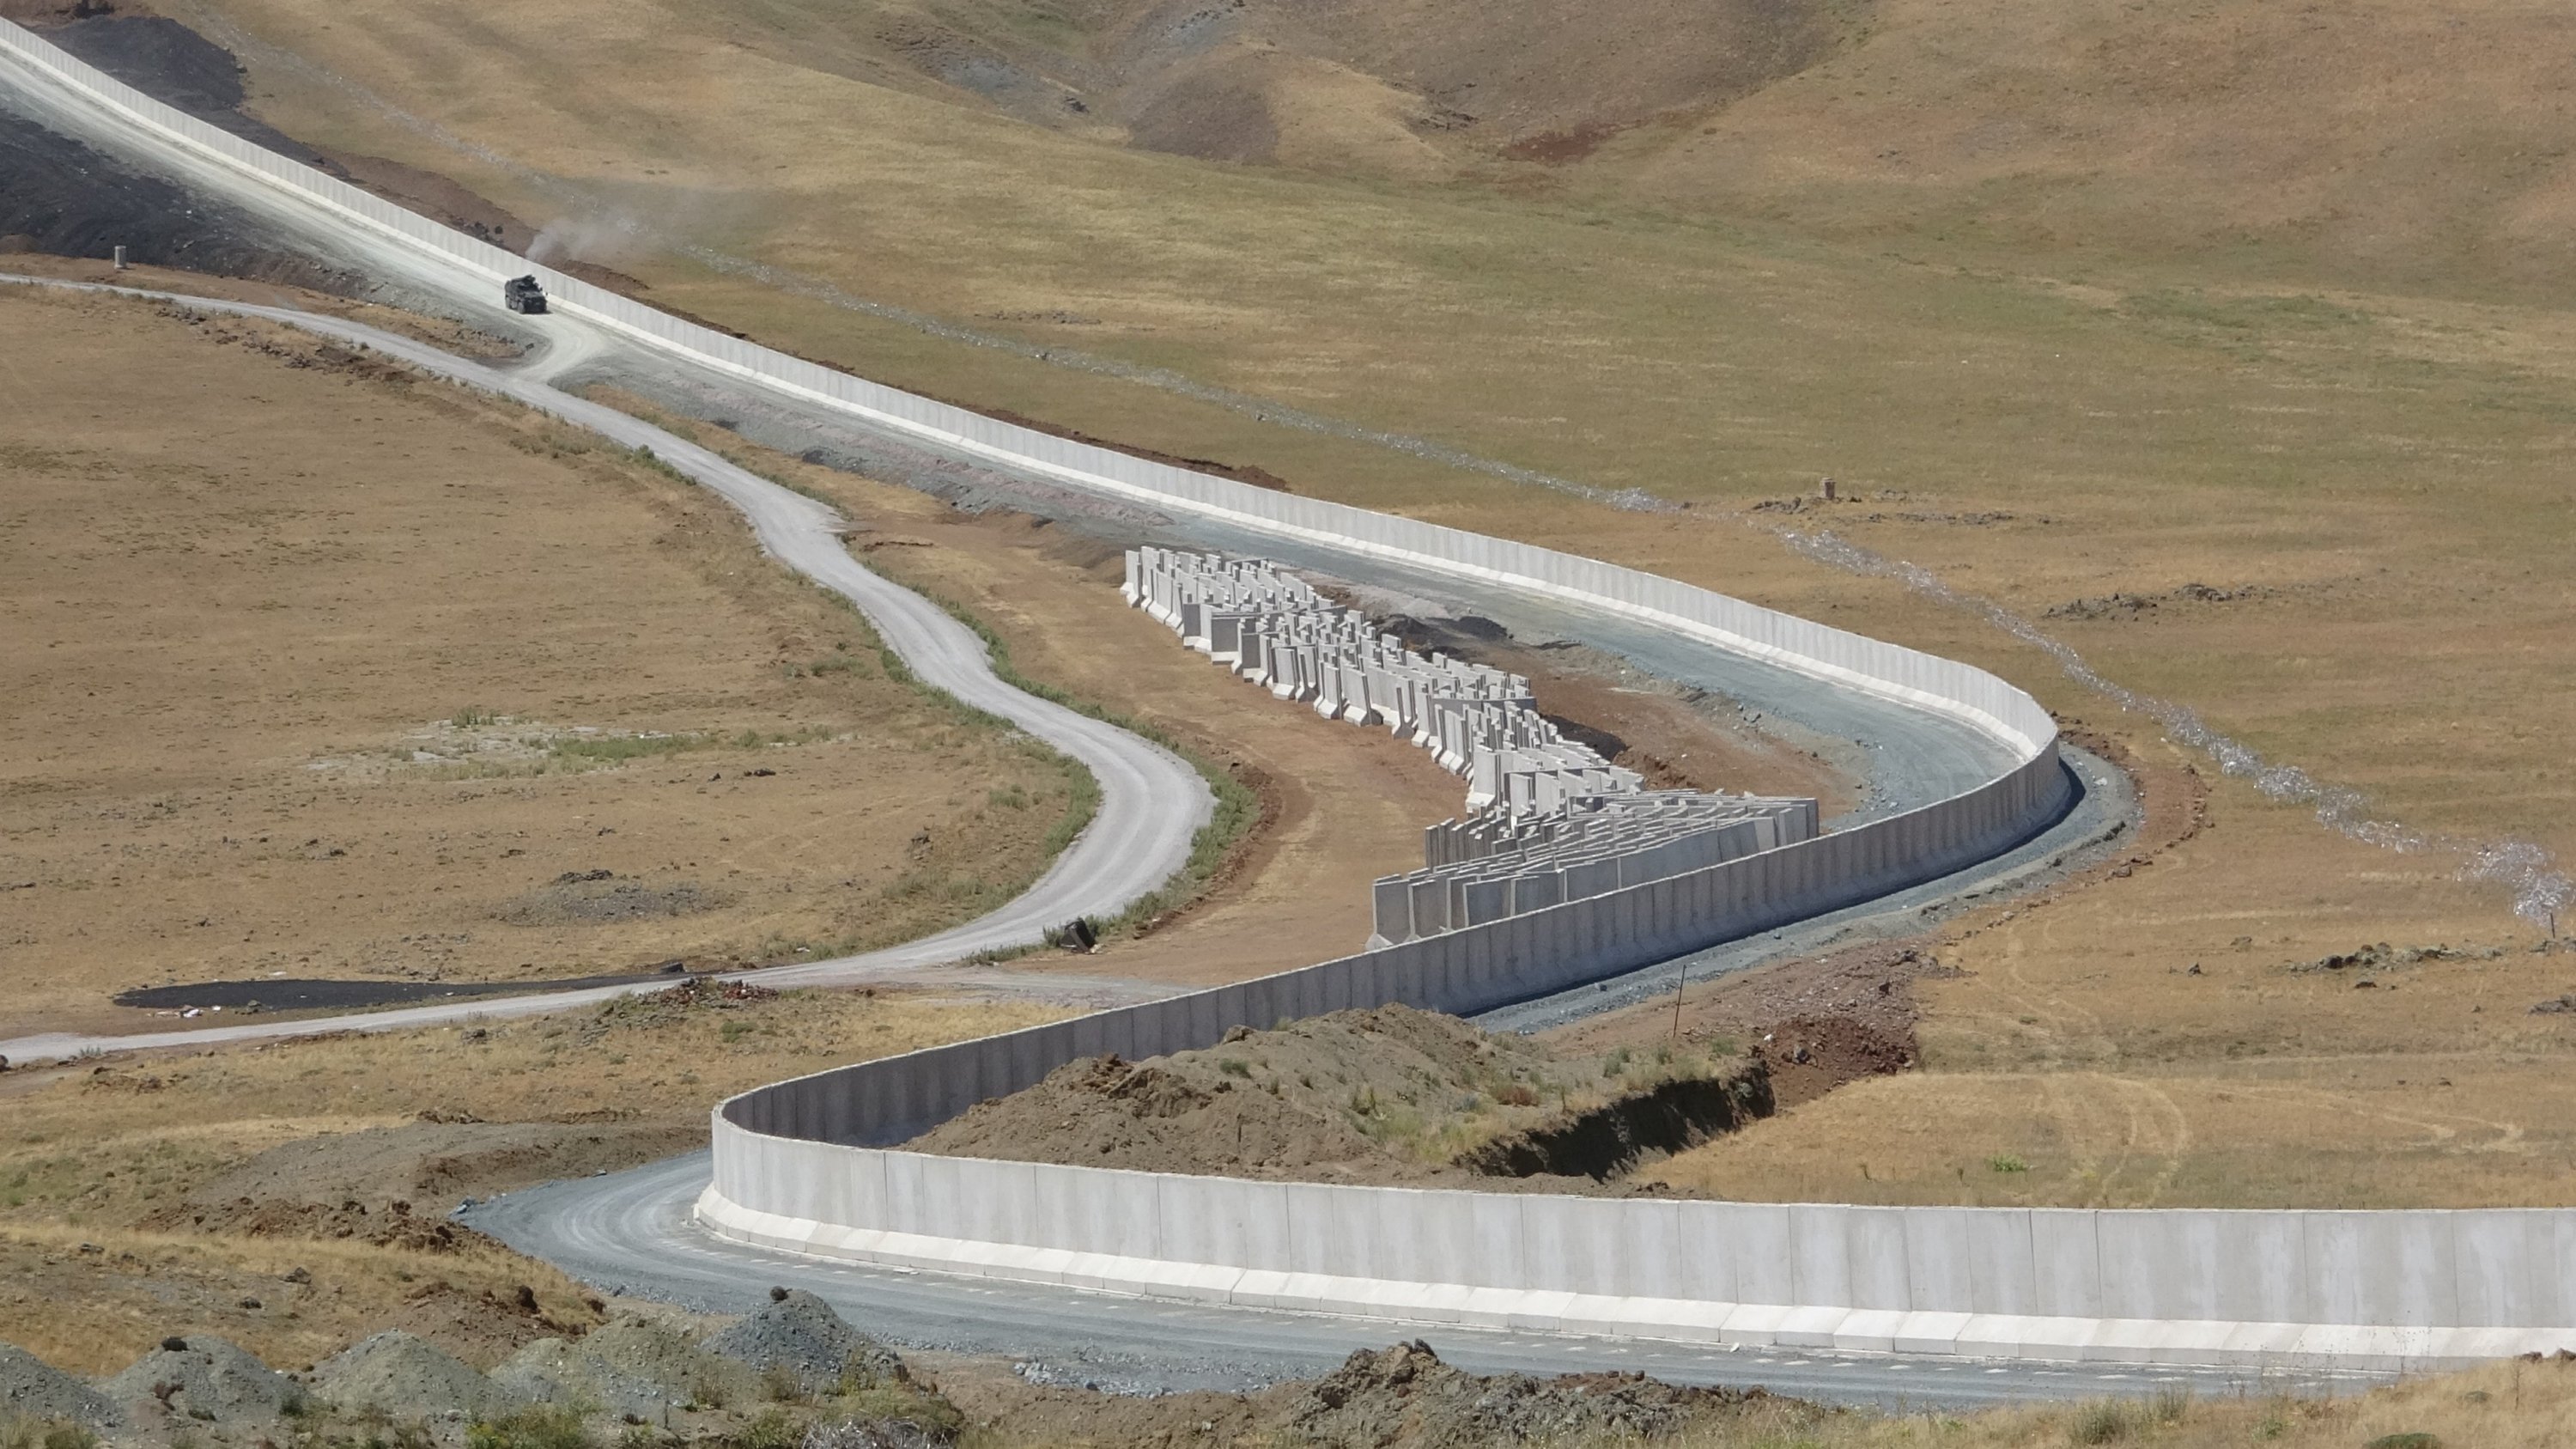 Աֆղանստանցի փախստականների հոսքը կանխելու համար Թուրքիան Իրանի հետ սահմանին բետոնե պատ է կառուցել